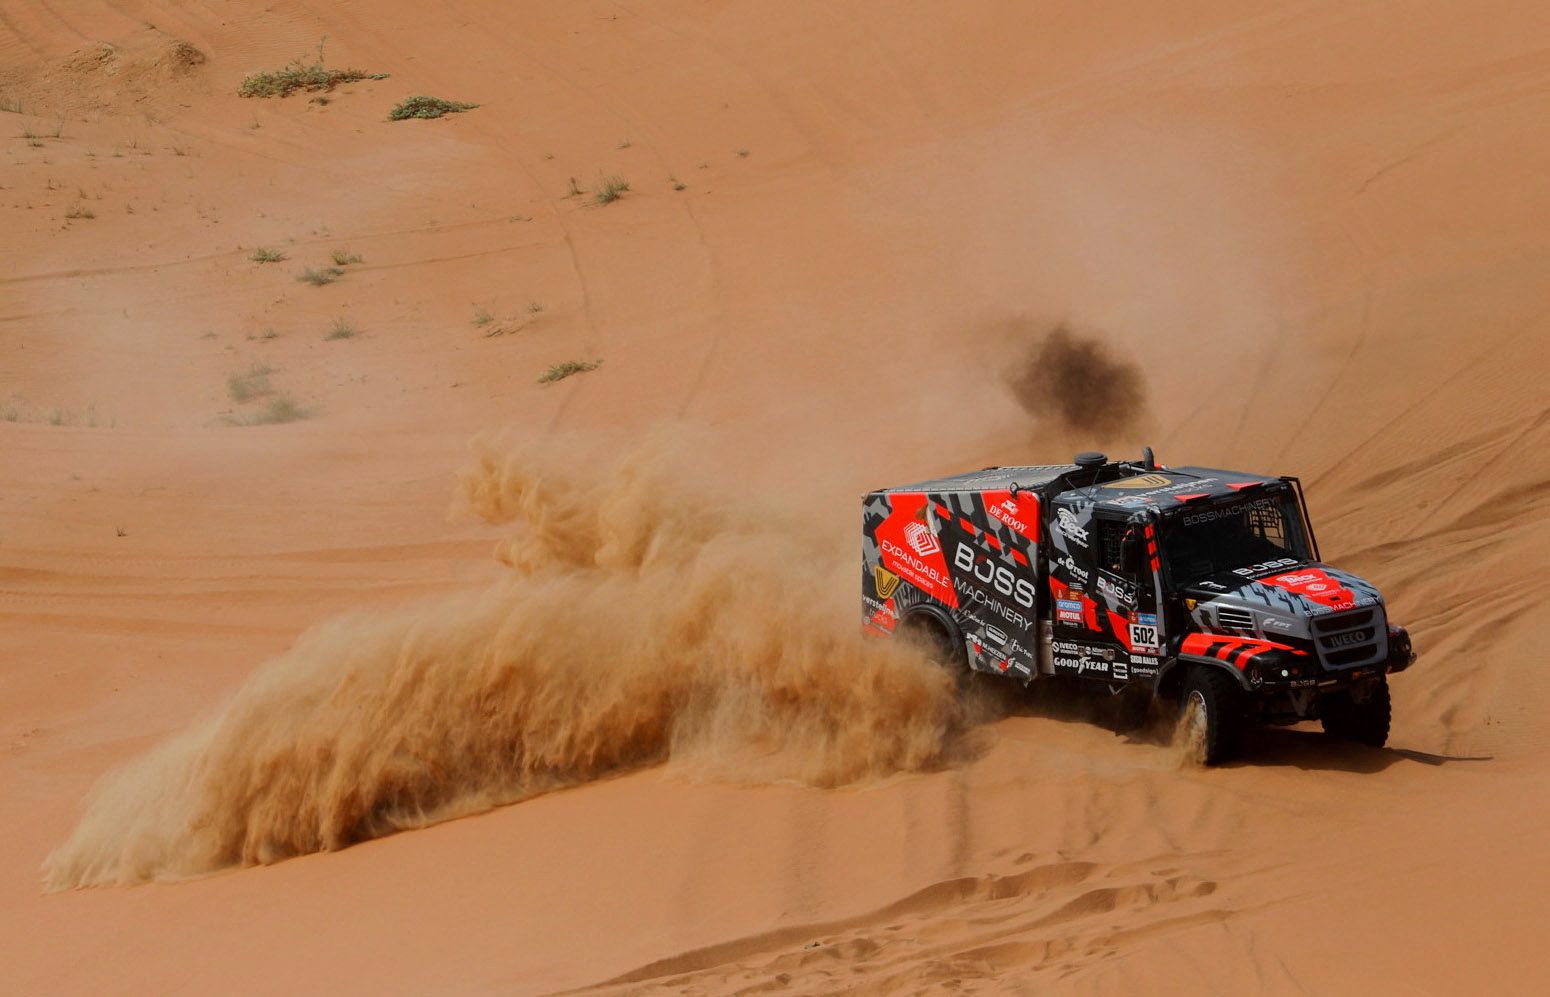 Dakar Rally (163608644).jpg